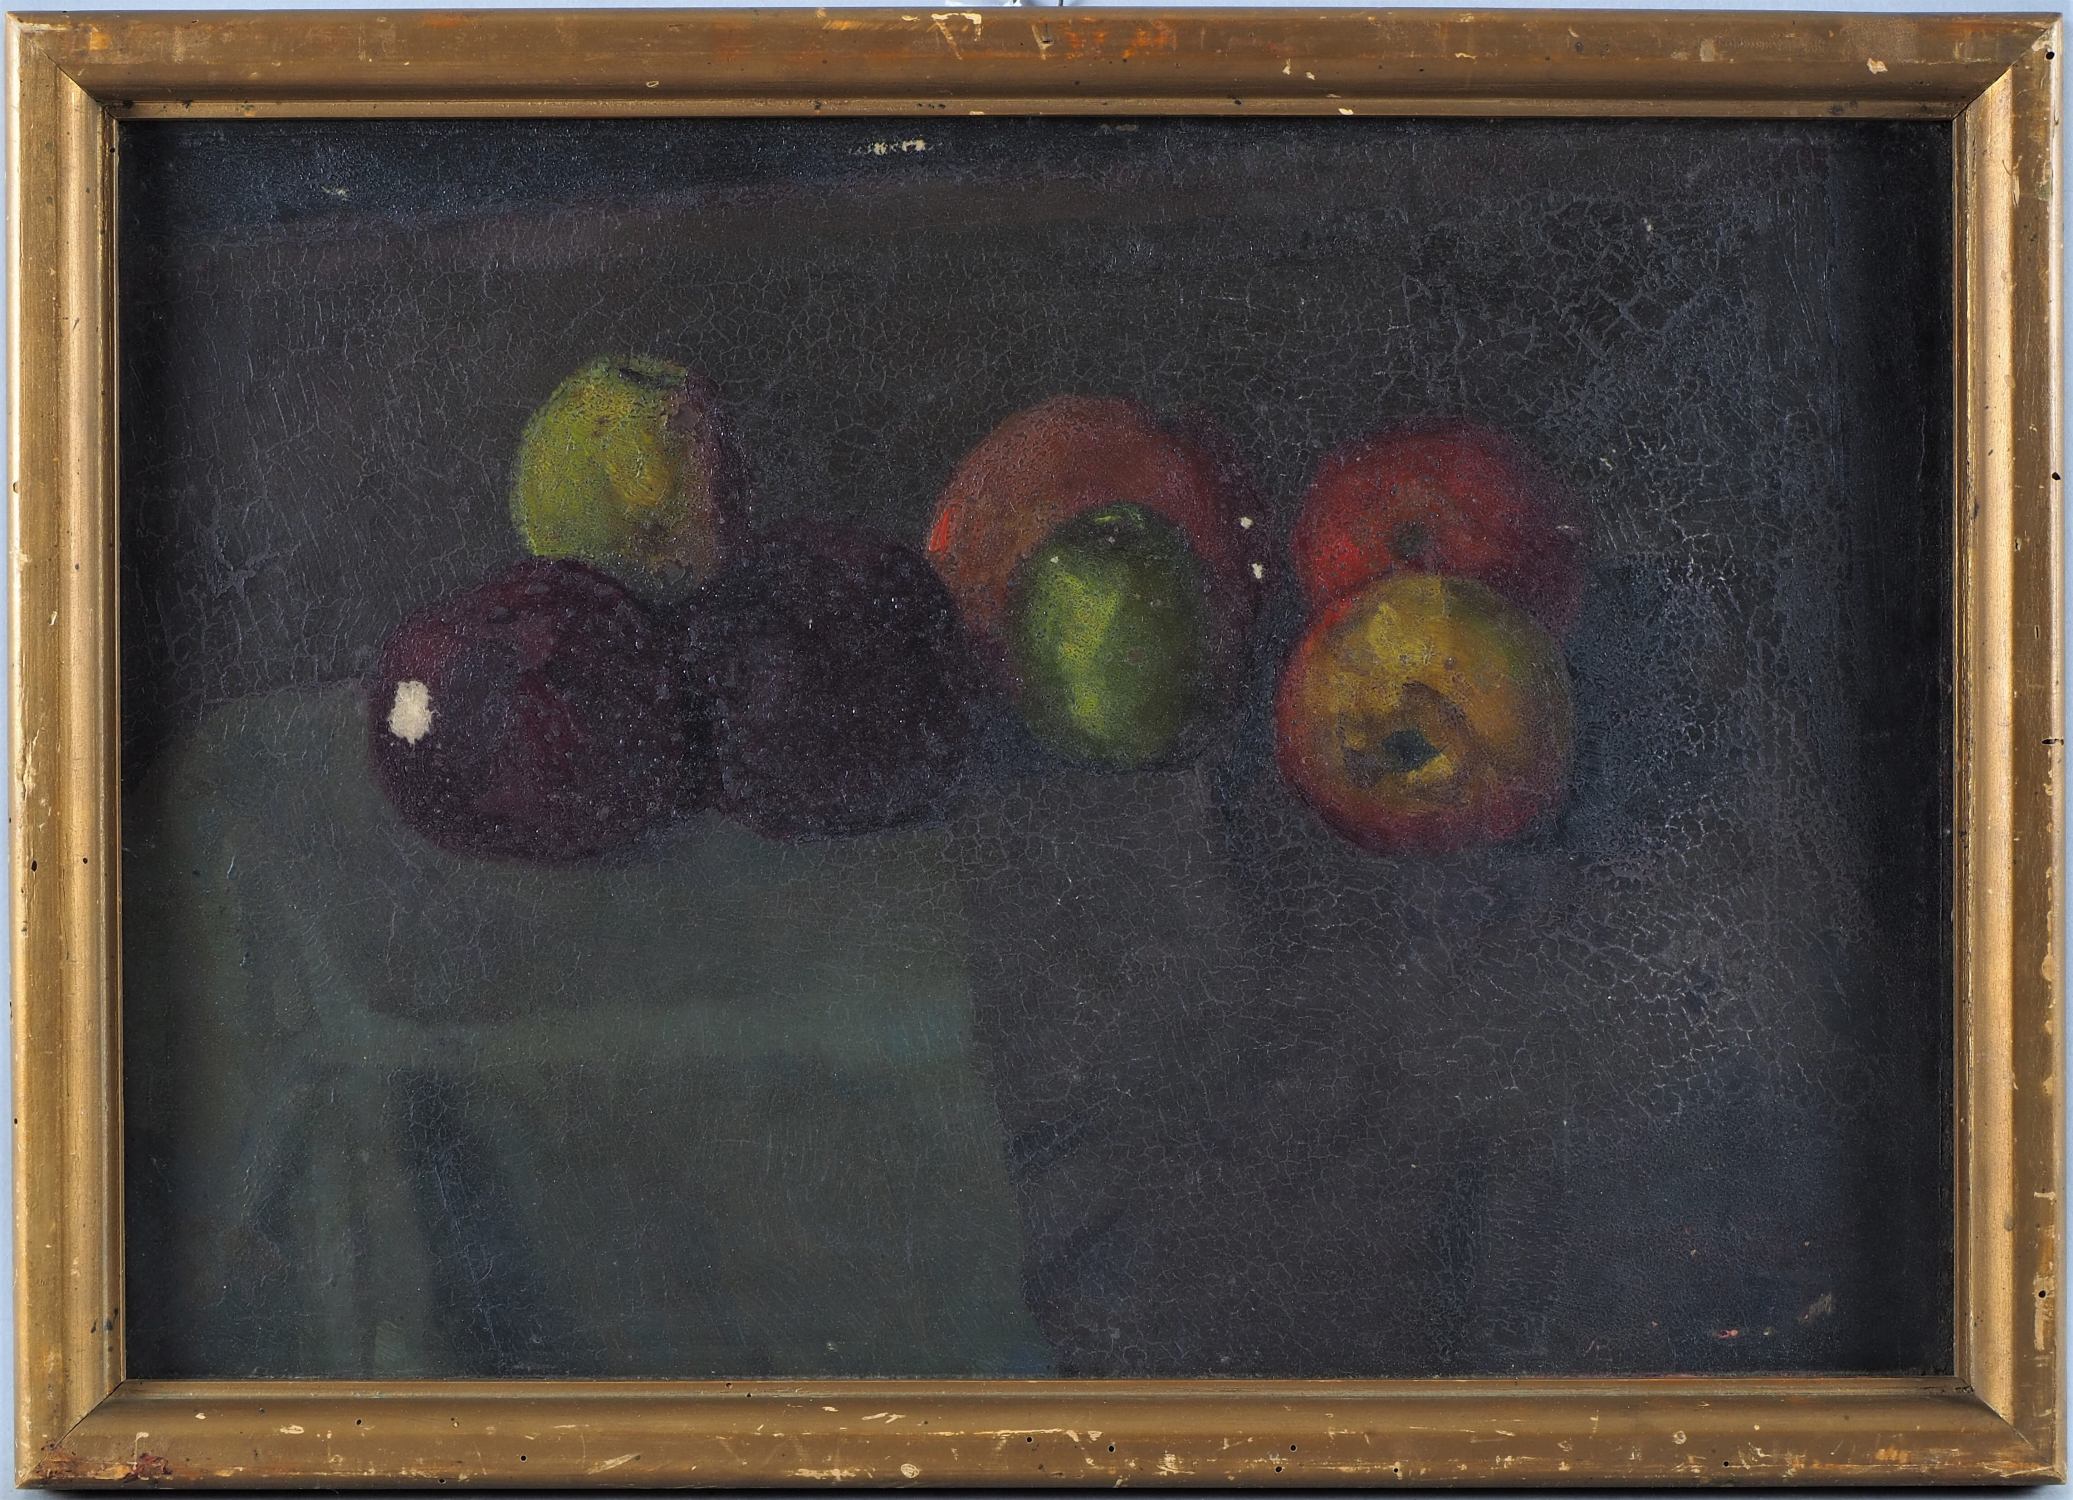 Anton Baur (1880, Biberach -1968, Munich) - Still life with apples, c. 1905